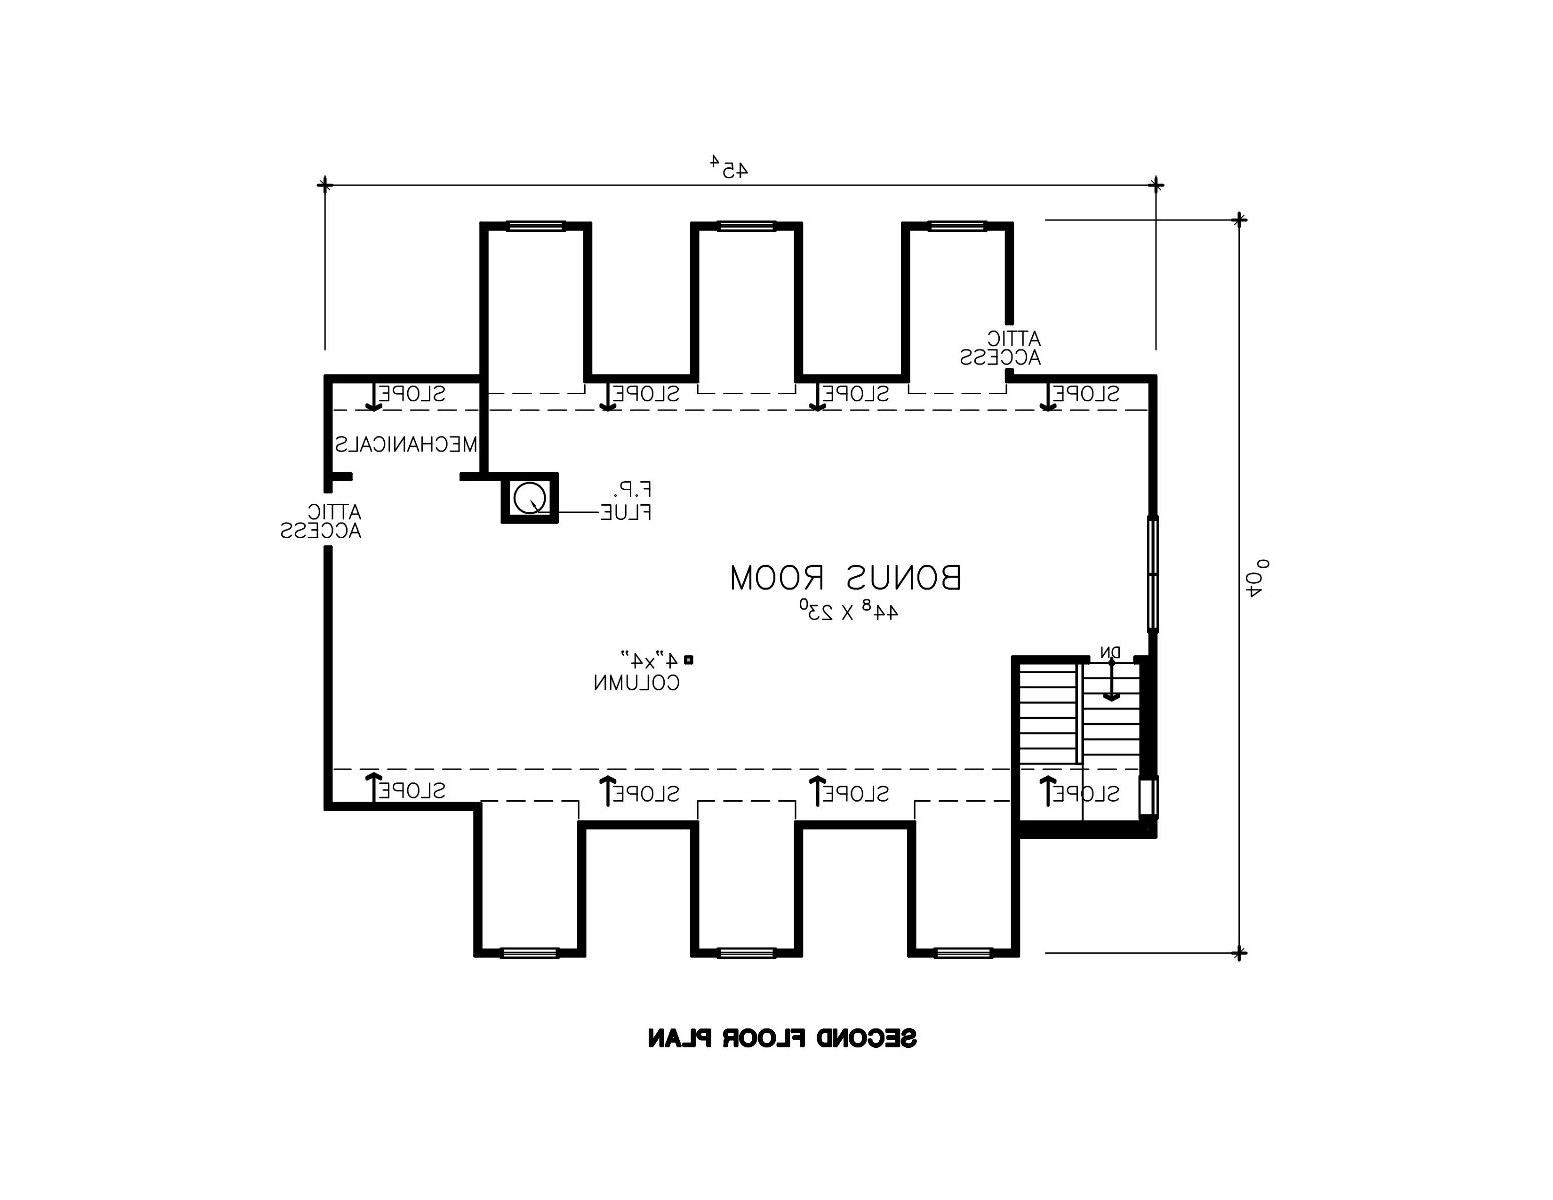 Second Floor Plan image of The Lauren House Plan